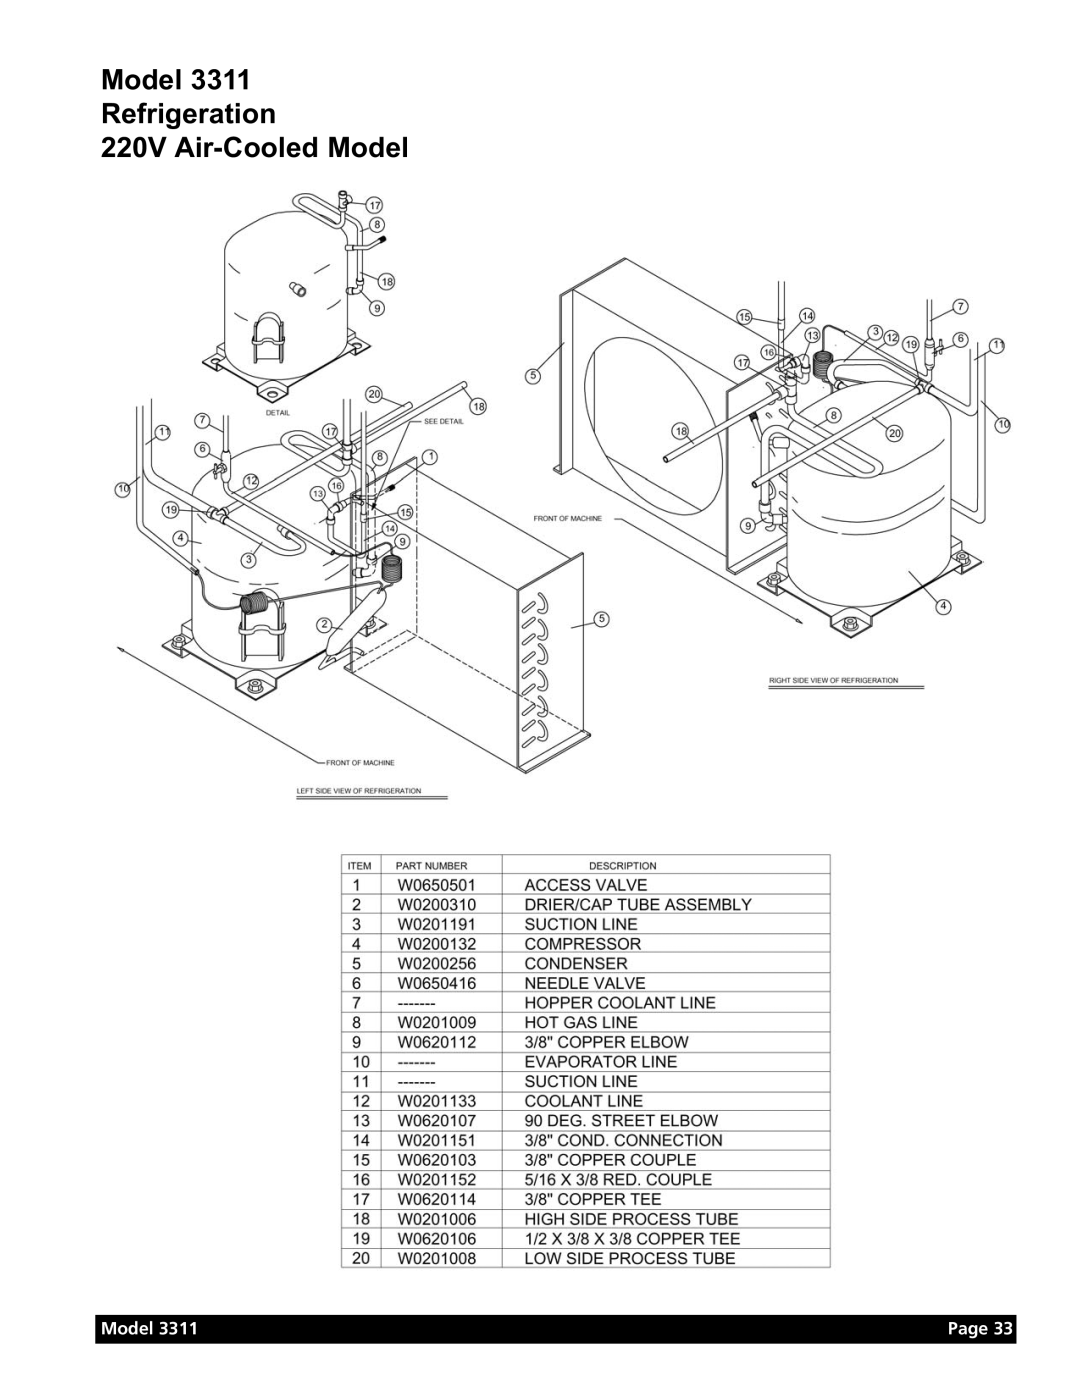 Grindmaster Model 3311 manual Model Refrigeration 220V Air-Cooled Model, Page 